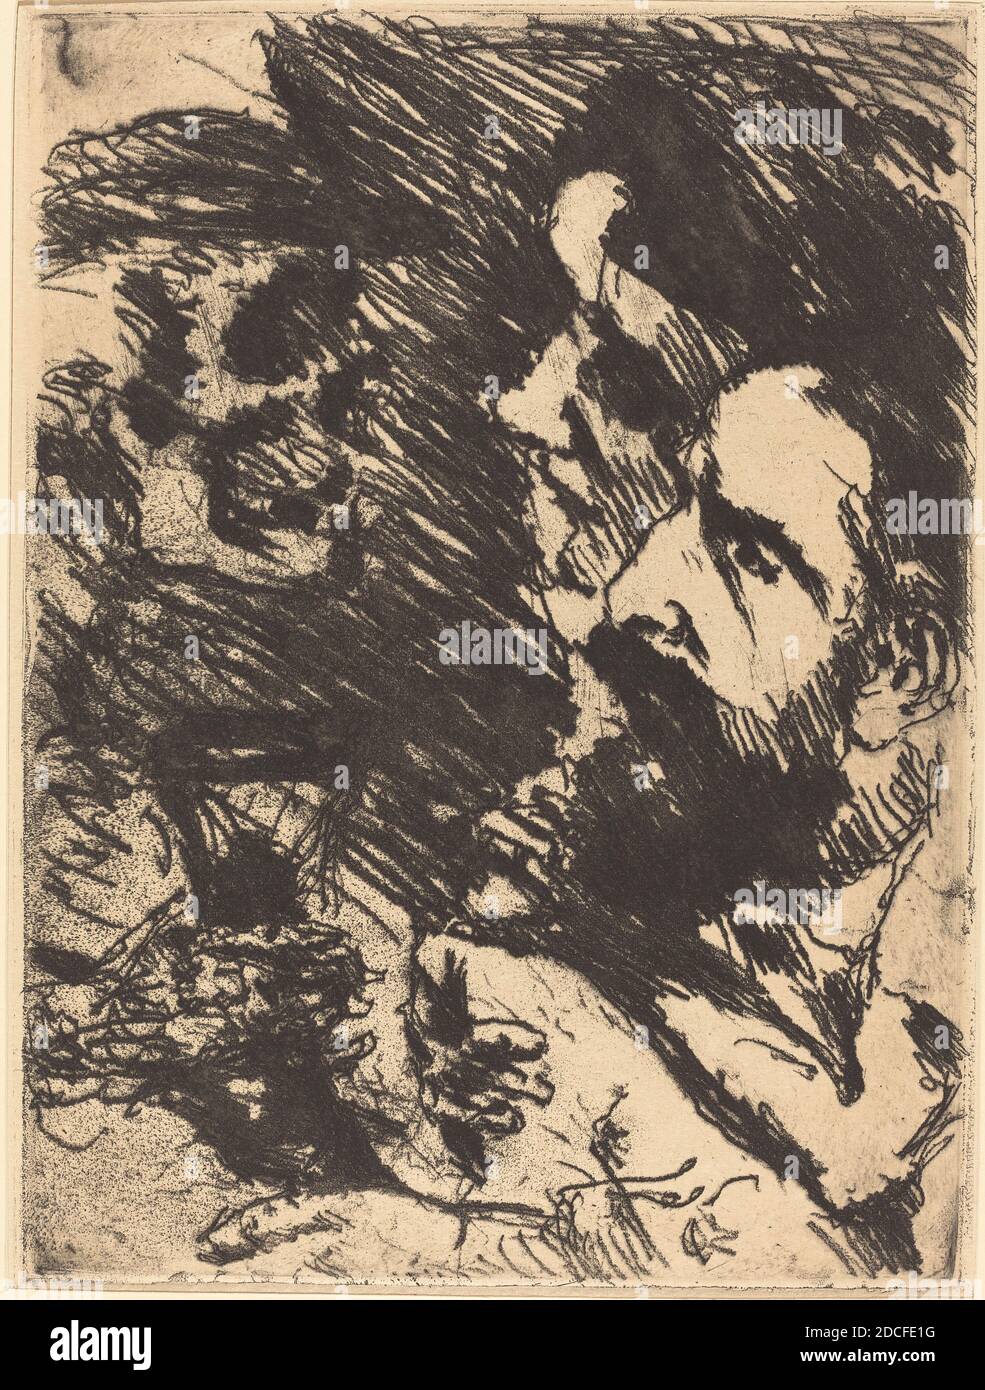 Lovis Corinth, (artiste), allemand, 1858 - 1925, Tod BEI Strucks (Death Visits the Strucks), Totentanz (danse de la mort), (série), 1921 (publié en 1922), gravure en noir sur papier vélin, plaque: 24 x 17.8 cm (9 7/16 x 7 po.), feuille: 30 x 23.7 cm (11 13/16 x 9 5/16 po), cadeau à la mémoire de Sigbert H. Marcy et en l'honneur du 50e anniversaire de la Galerie nationale d'art Banque D'Images